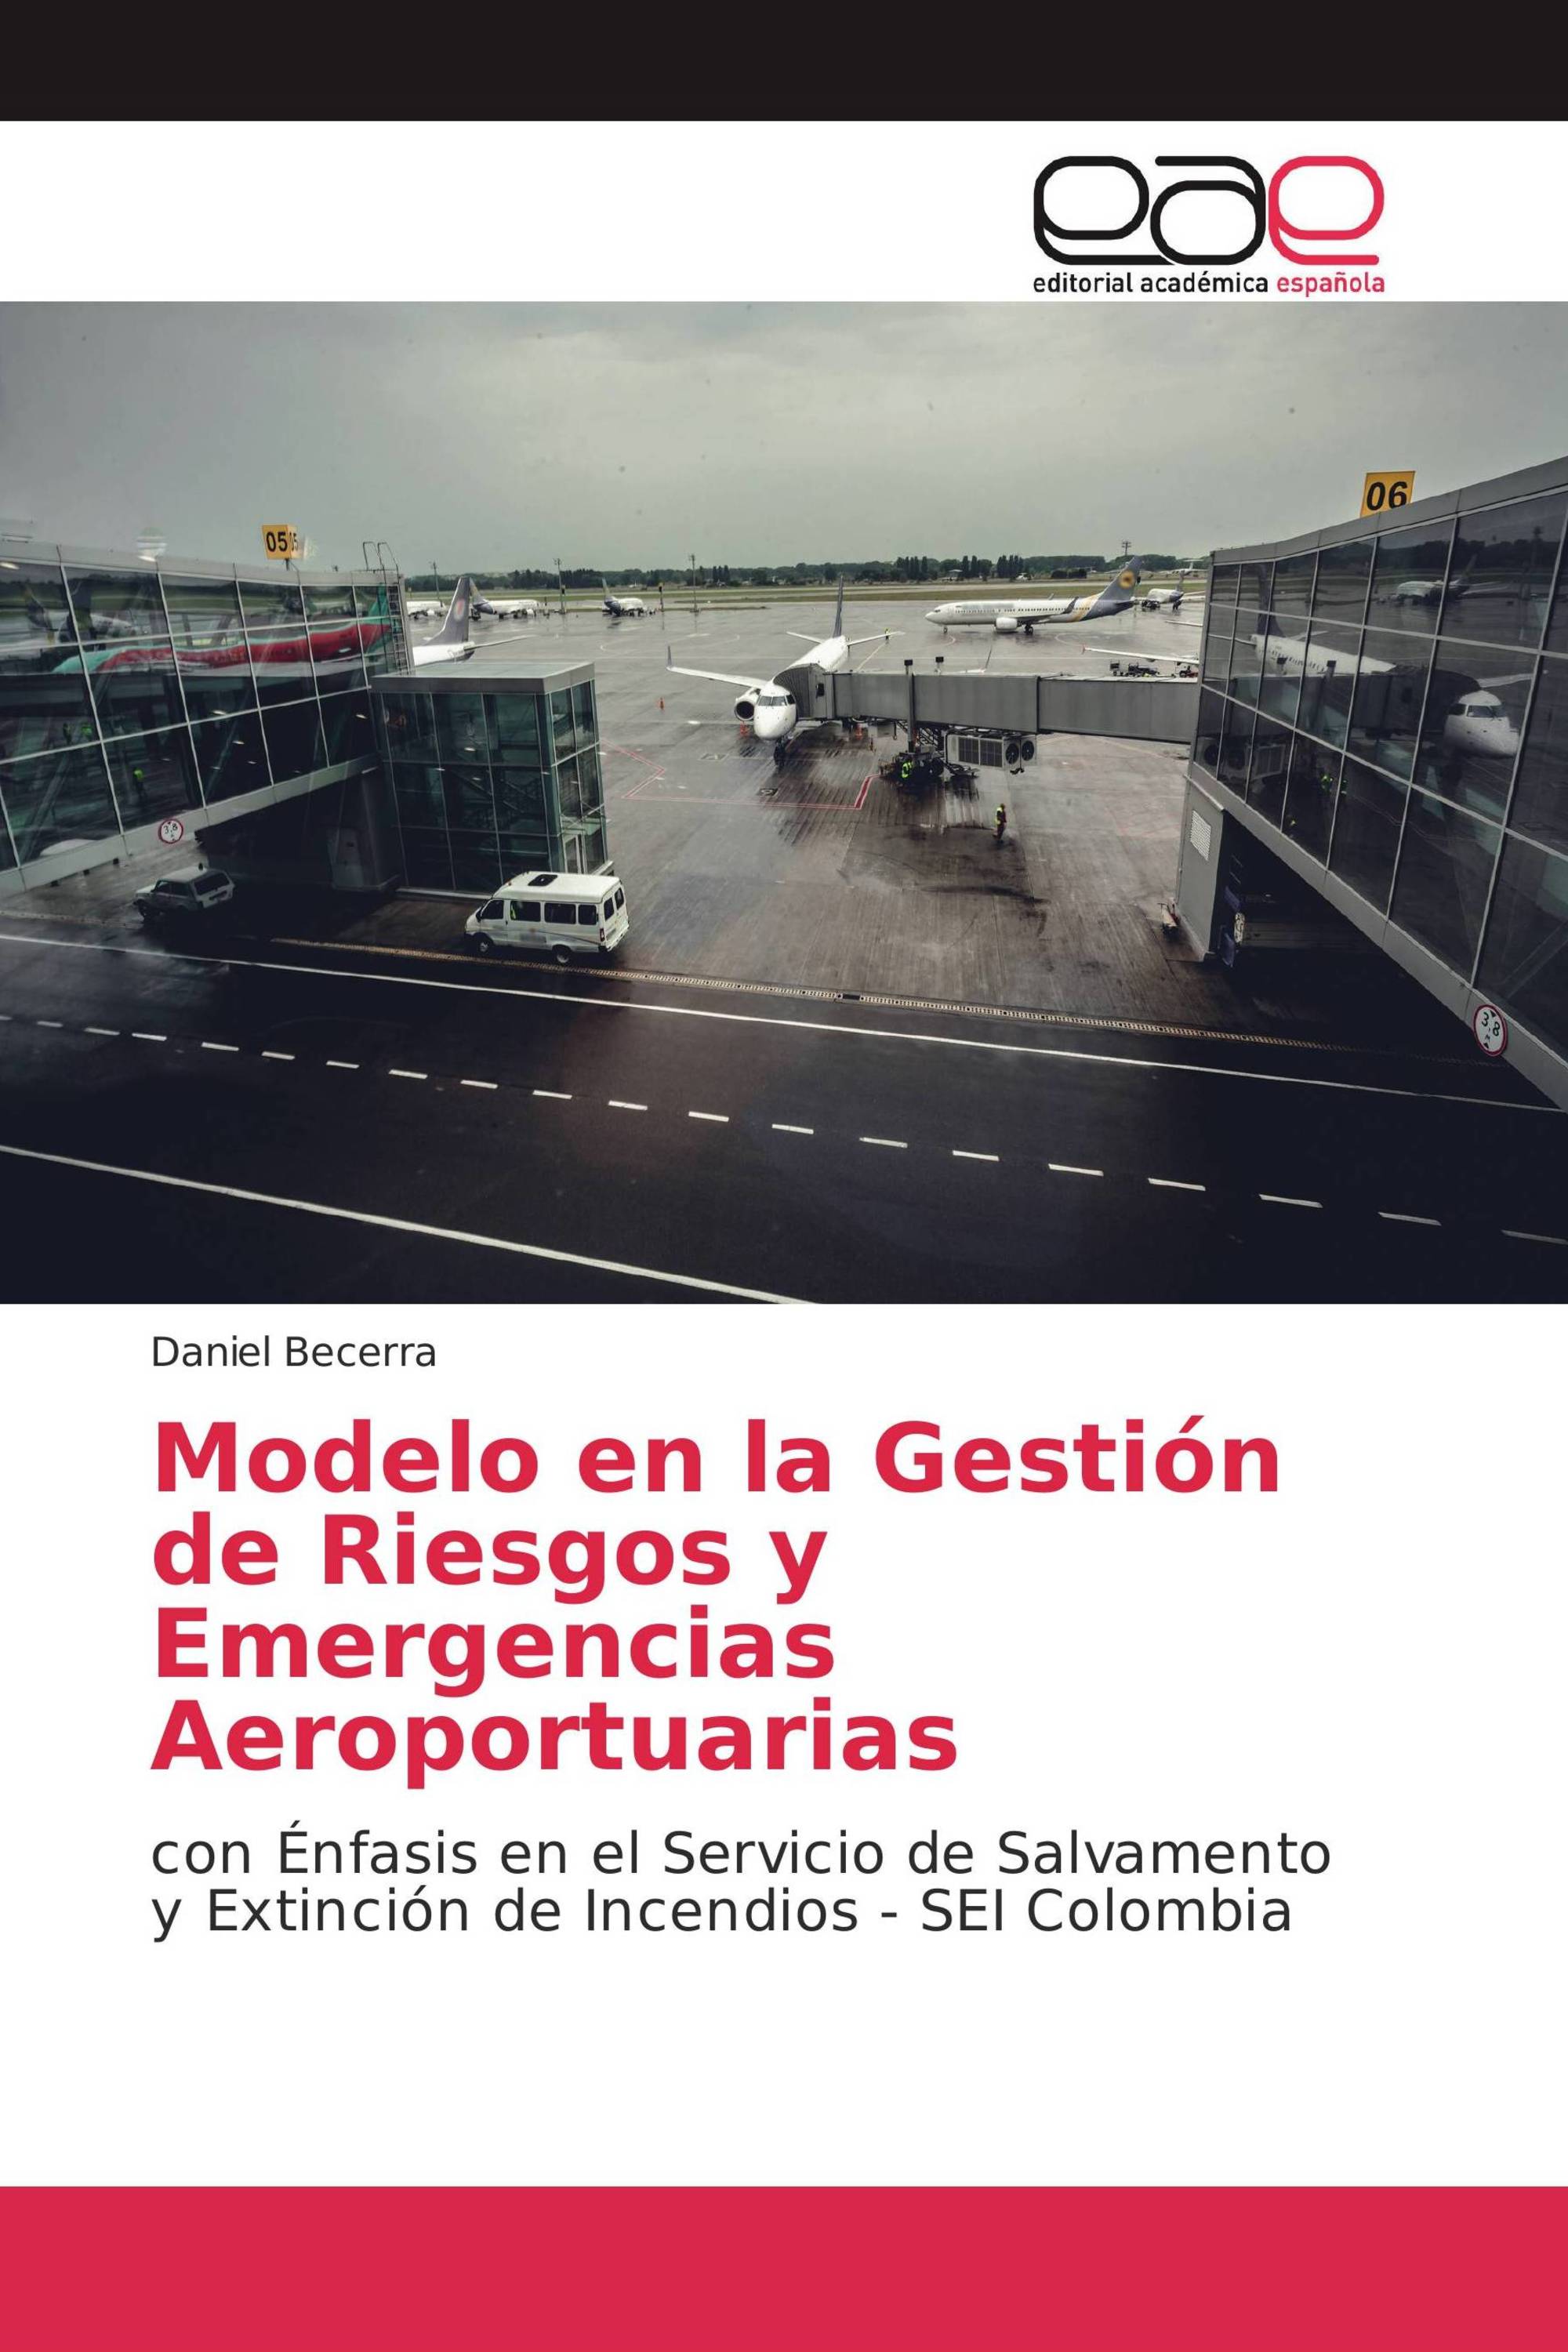 Modelo en la Gestión de Riesgos y Emergencias Aeroportuarias